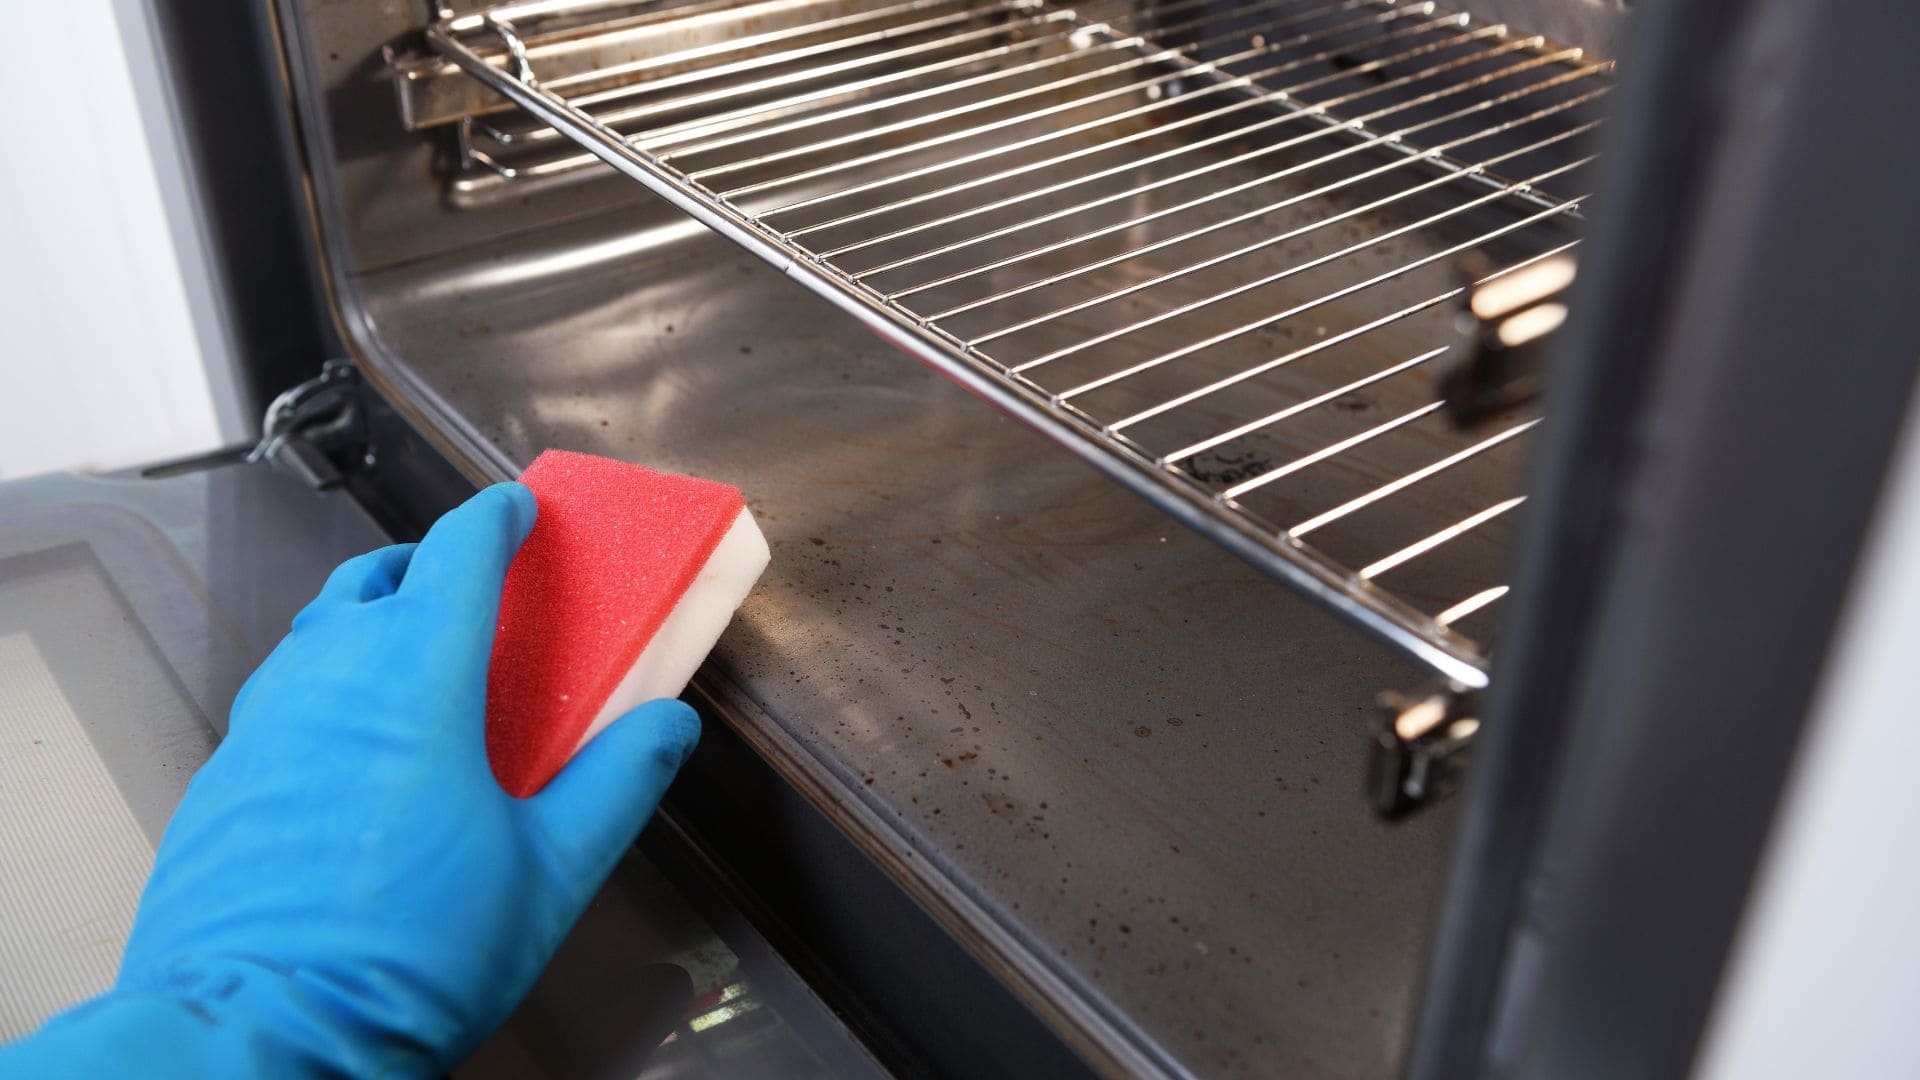 El bicarbonato de sodio es el ingrediente perfecto para limpiar el horno